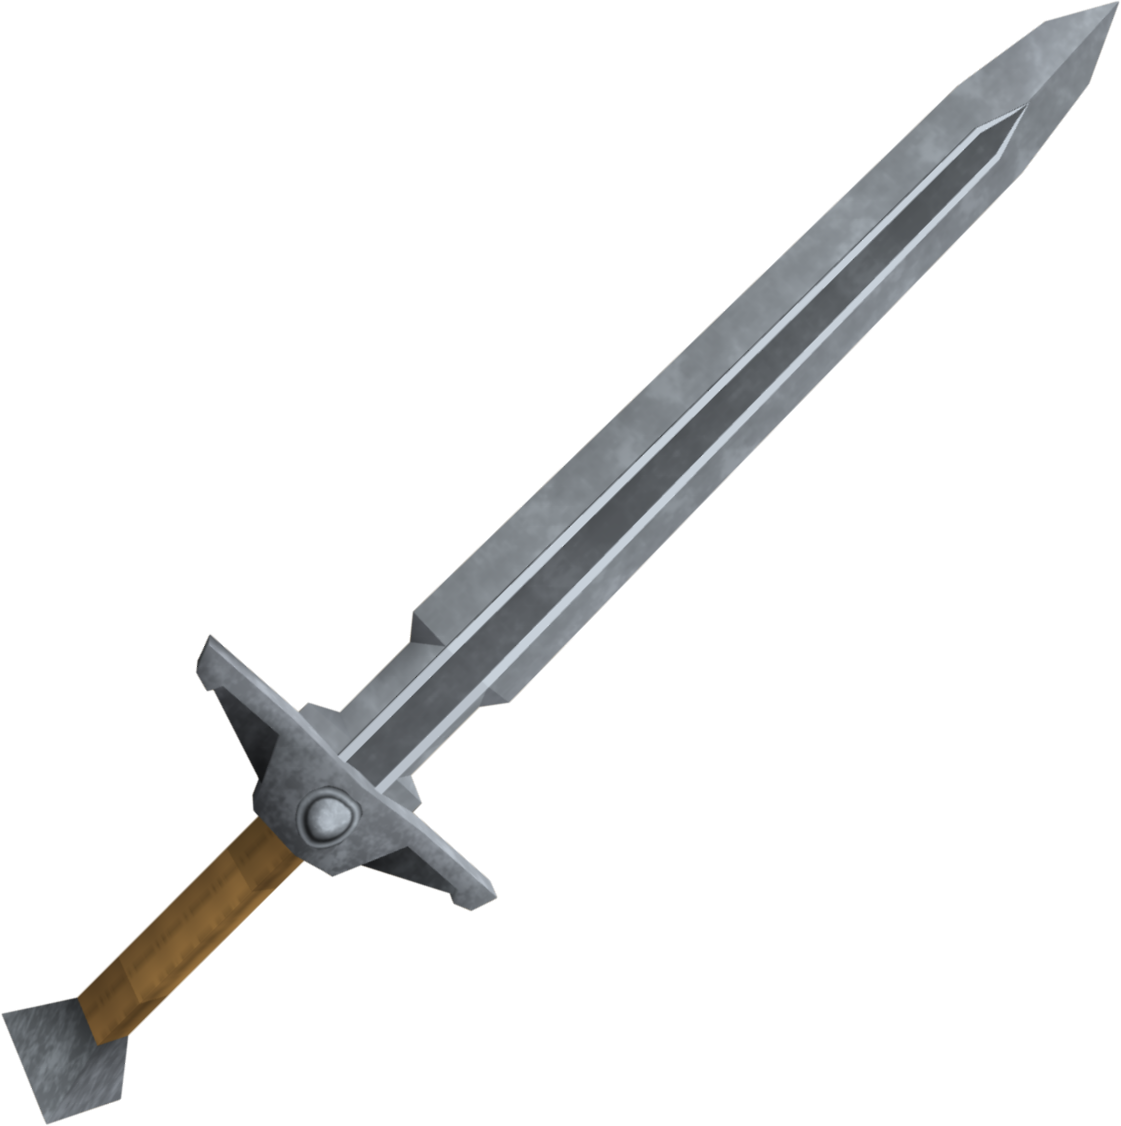 Steel Sword Weapon Png - Sword (1121x1126), Png Download